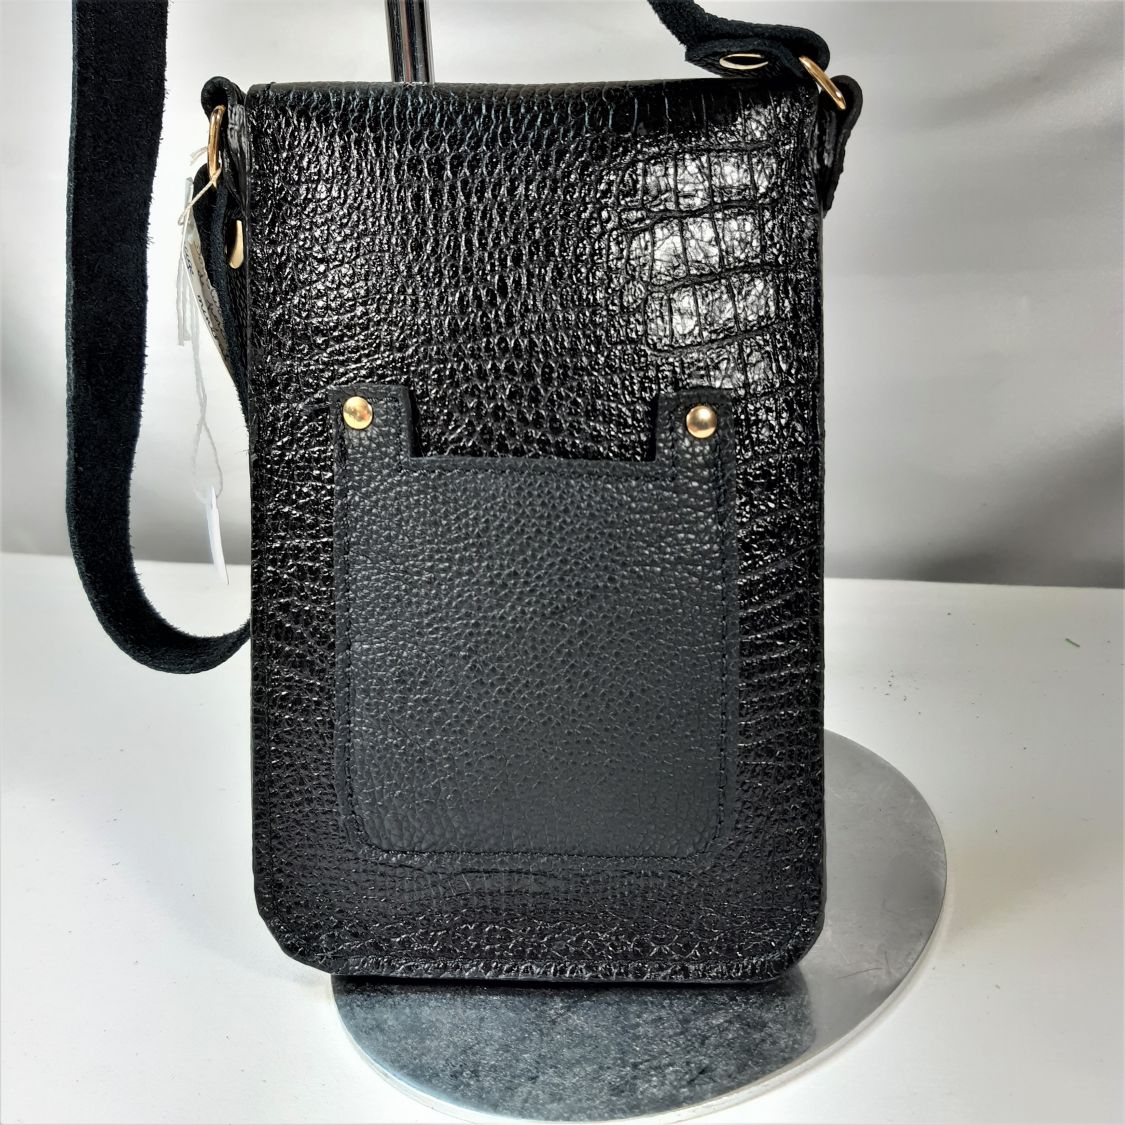 Smartphone-Tasche aus bedrucktem Rindsleder in Schwarz.